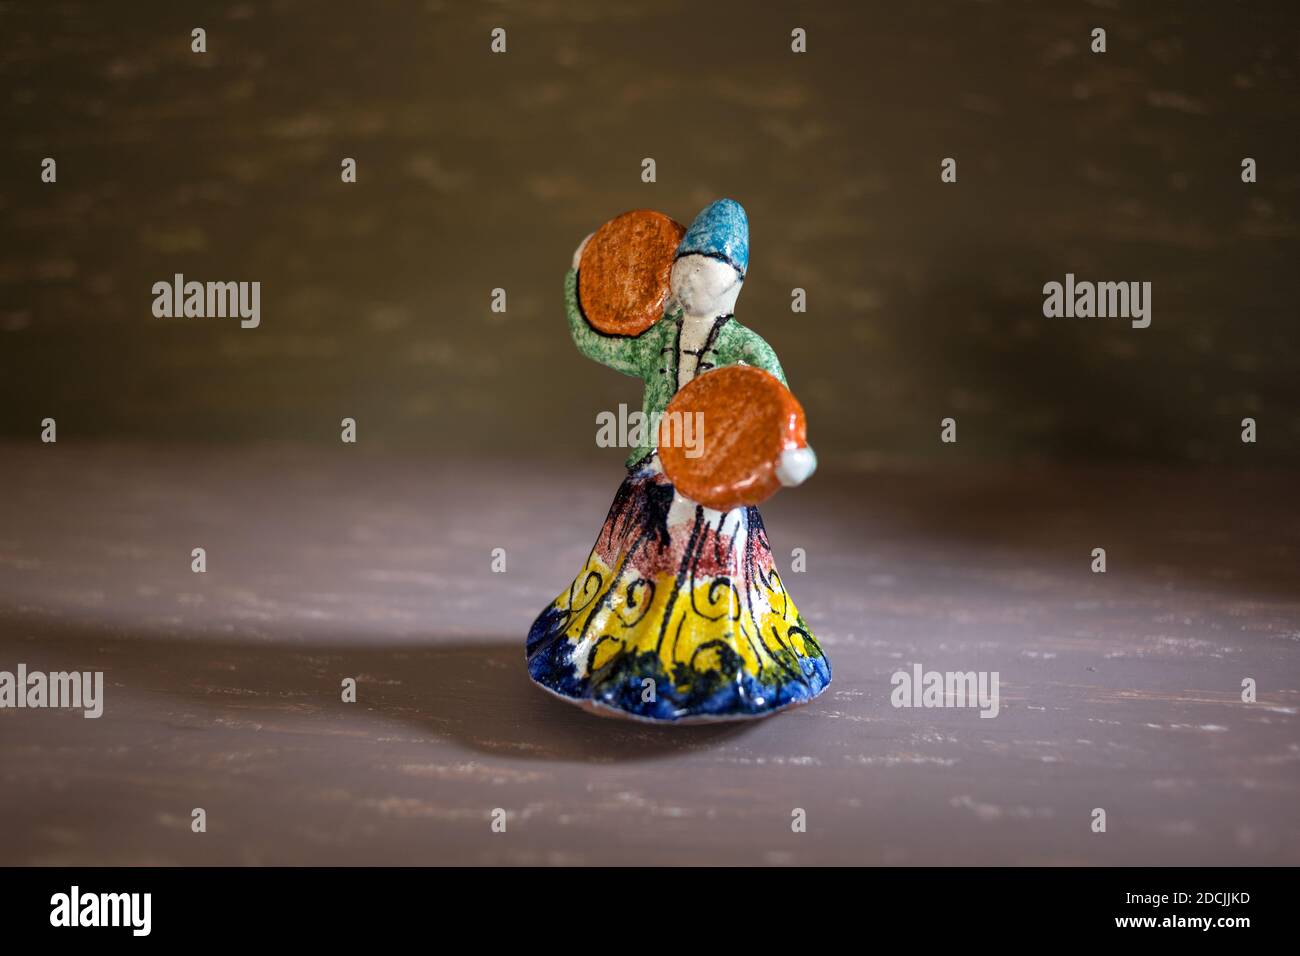 Le Caire, novembre 10.Poterie statue colorée de danse dervish sur fond de couleurs différentes avec effet de lumière dramatique. Etude symbolique de mevlevi myst Banque D'Images